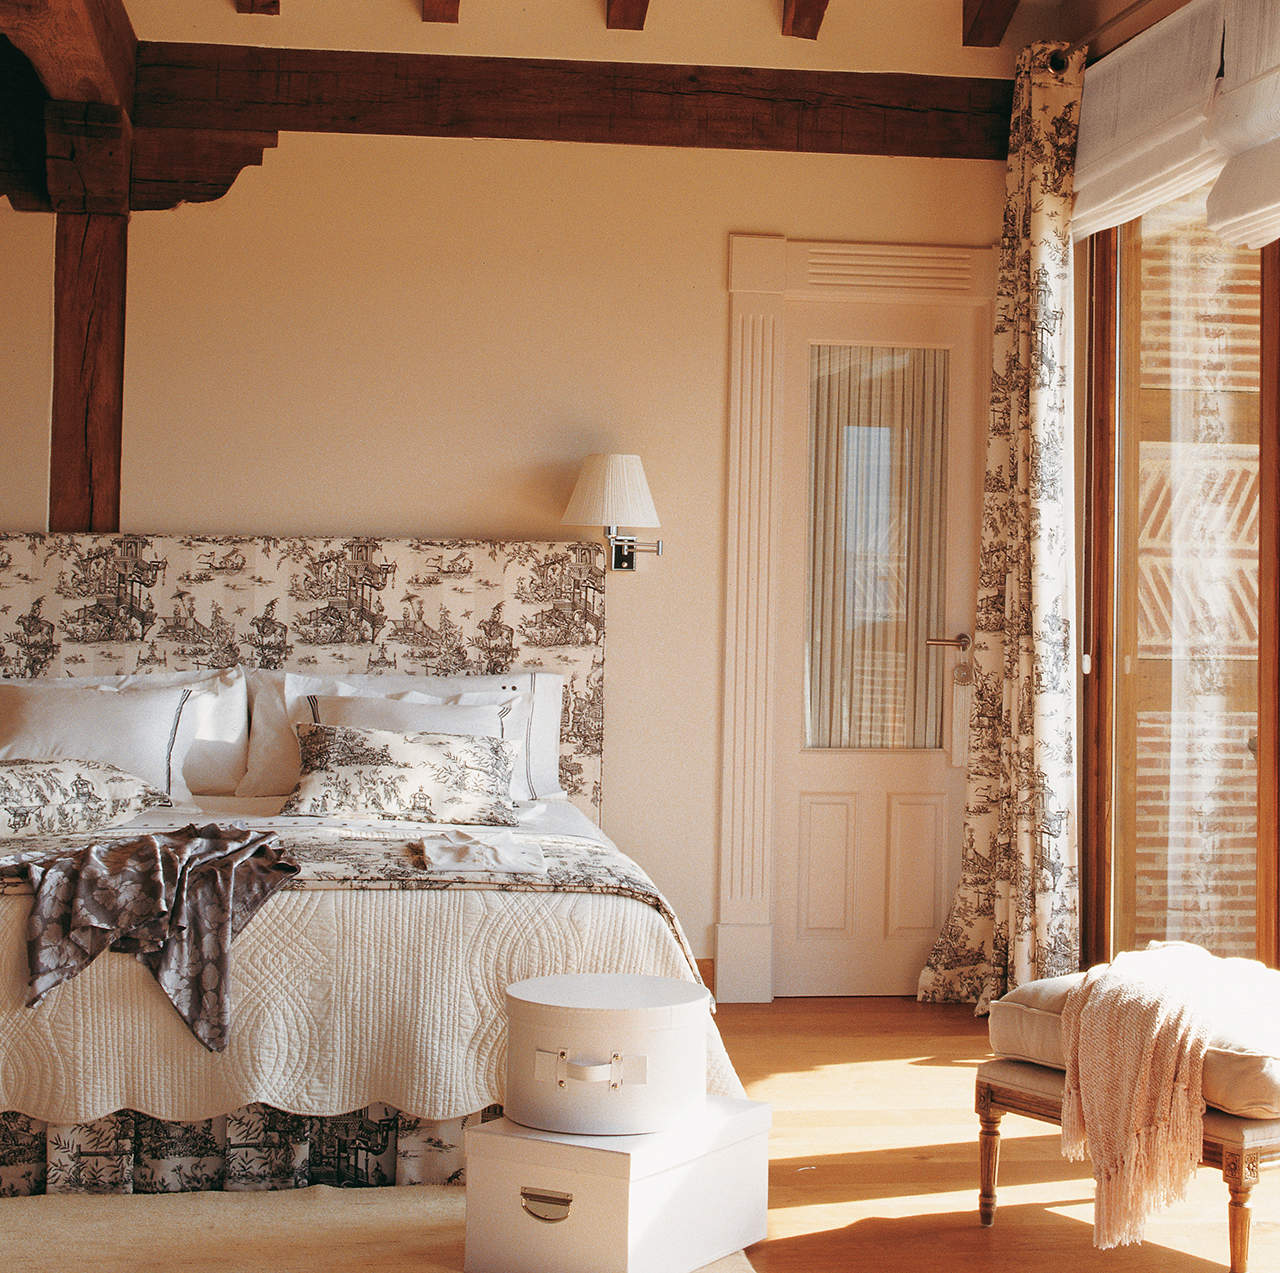 Dormitorio con cabecero, ropa de cama y cortinas con telas con el mismo toile de jouy